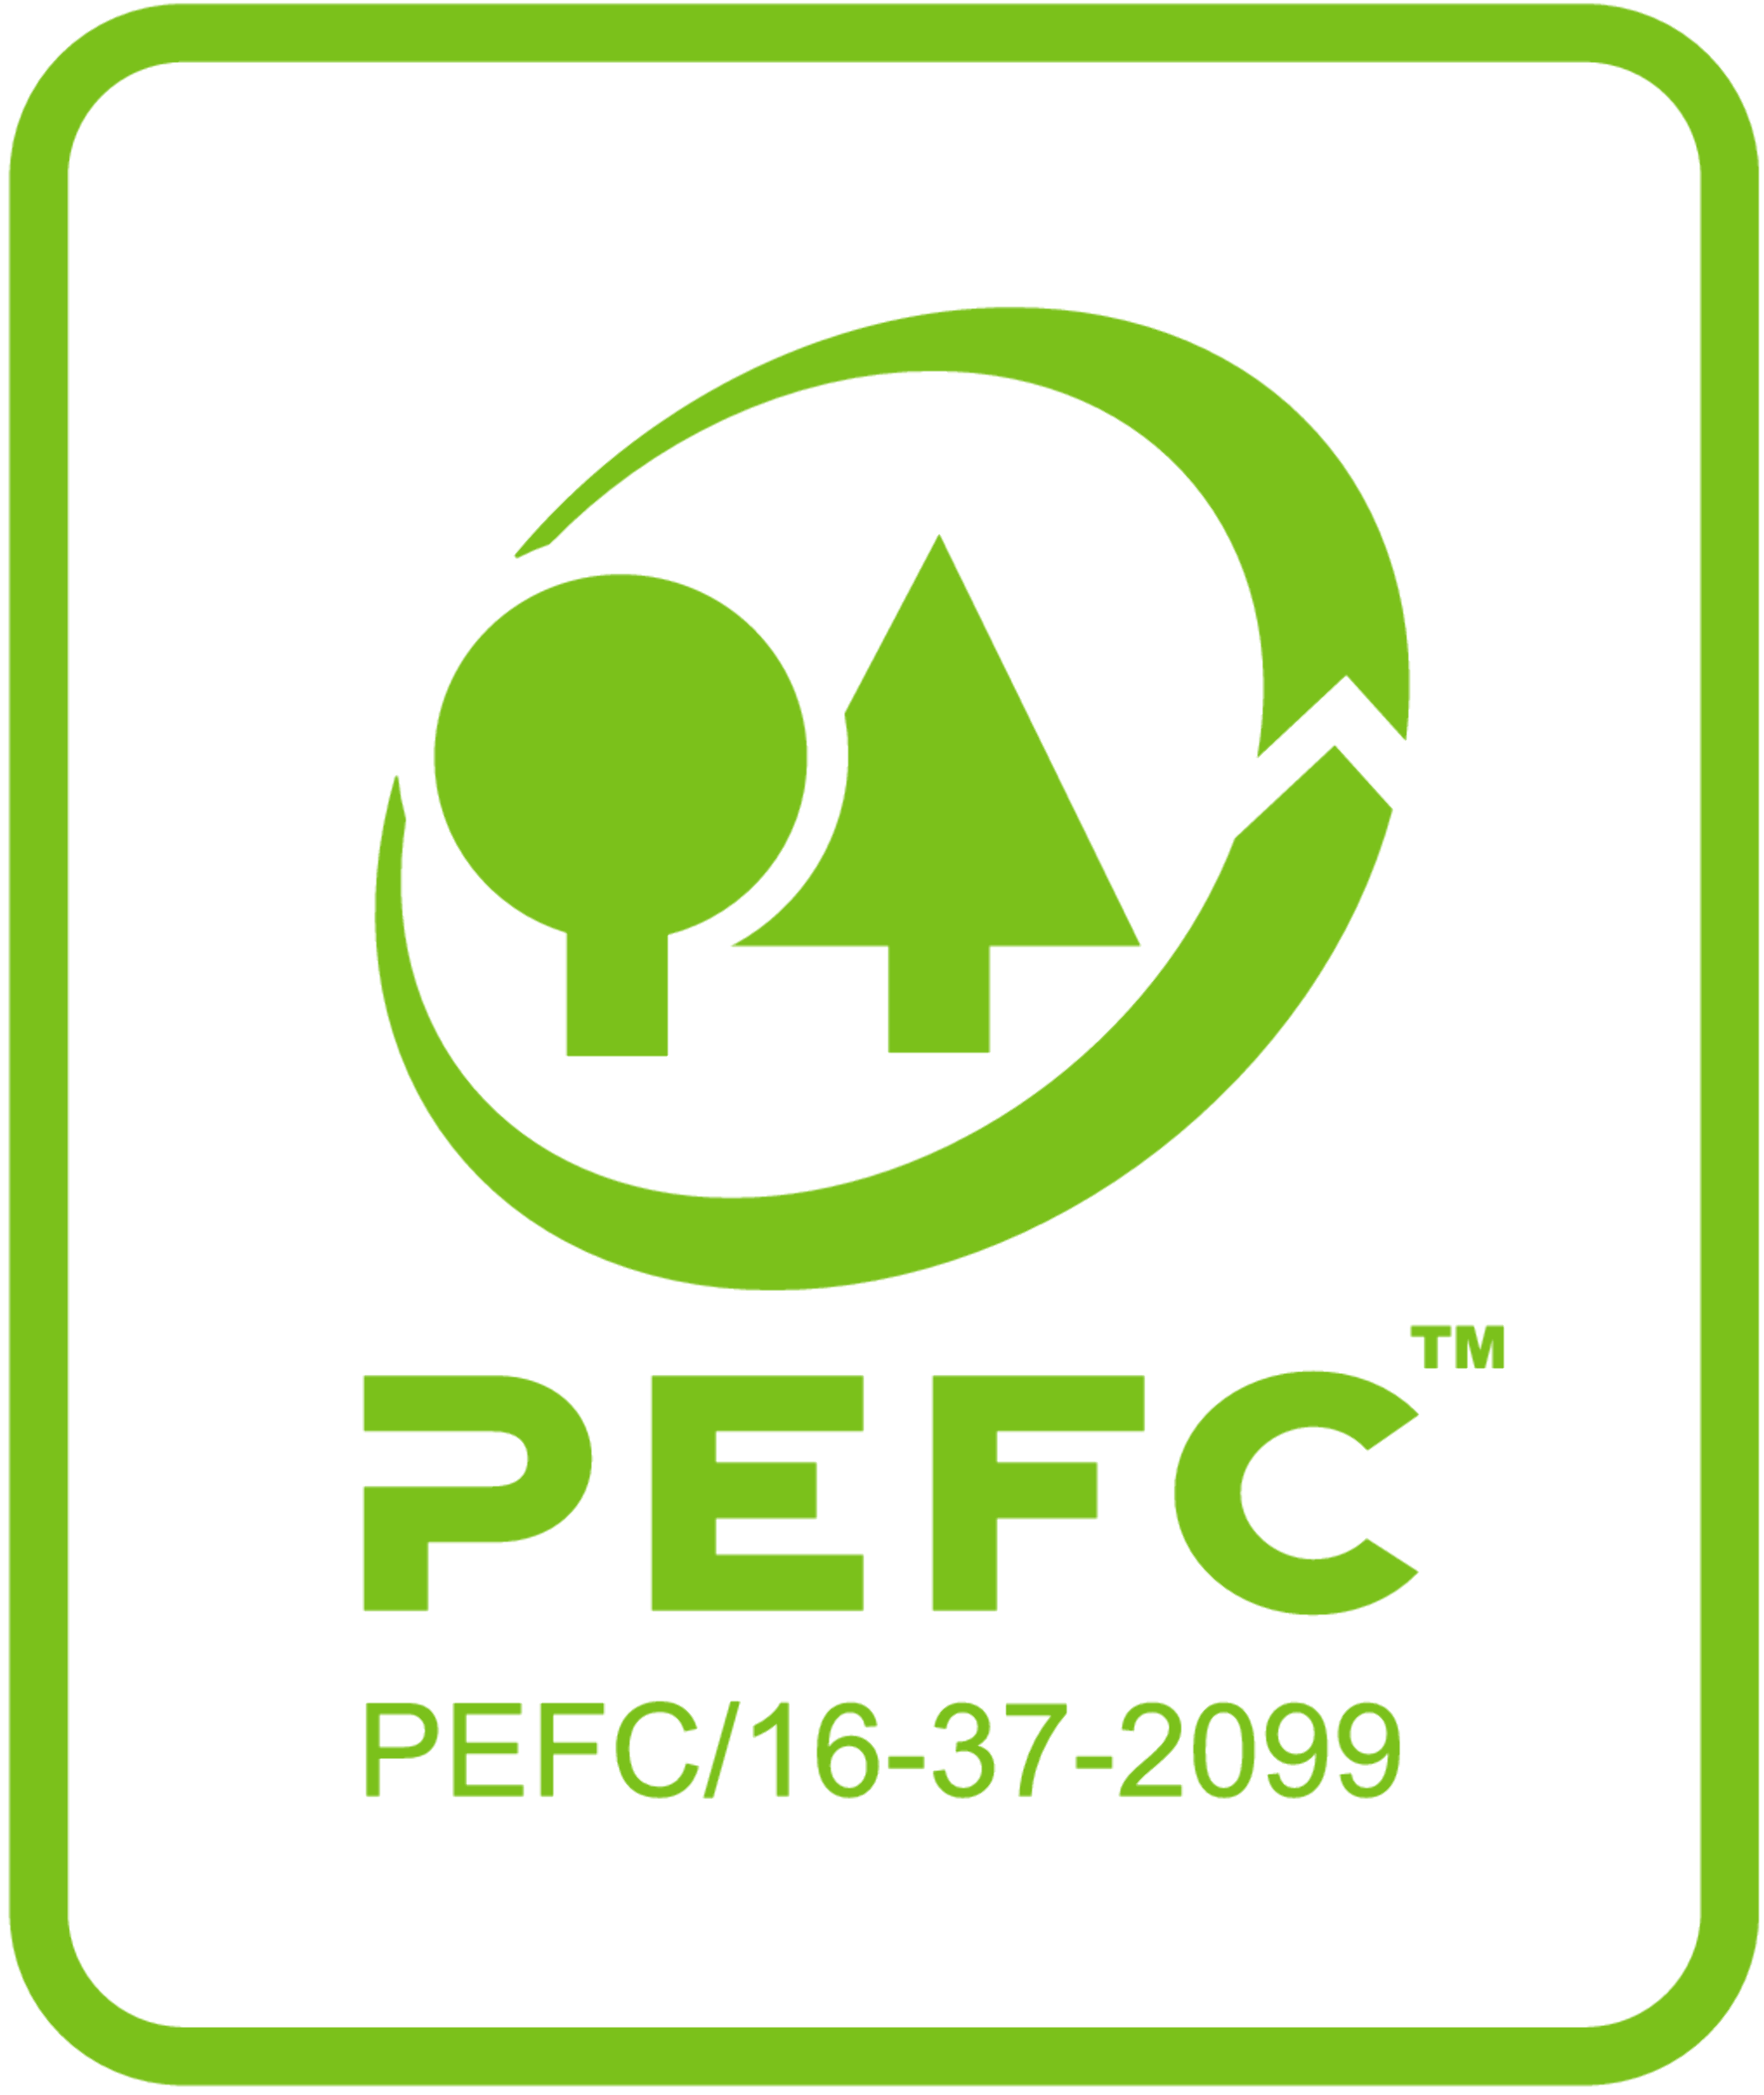 pefc logo green